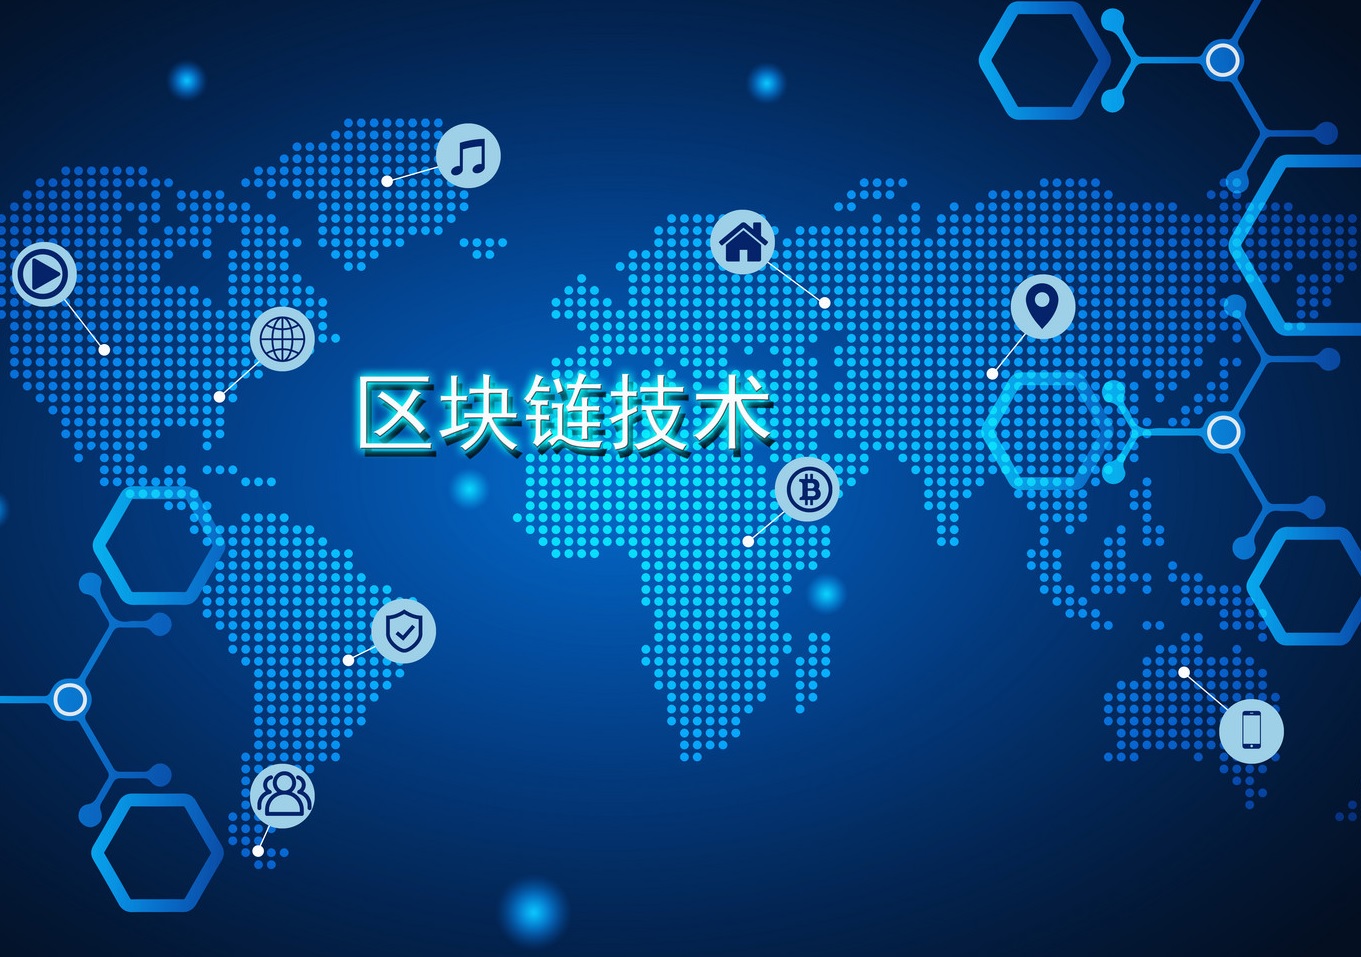 这是一张描绘全球数字网络的图片，以蓝色为主色调，世界地图上分布着各种科技图标和连接线，中间有“区块链技术”文字。